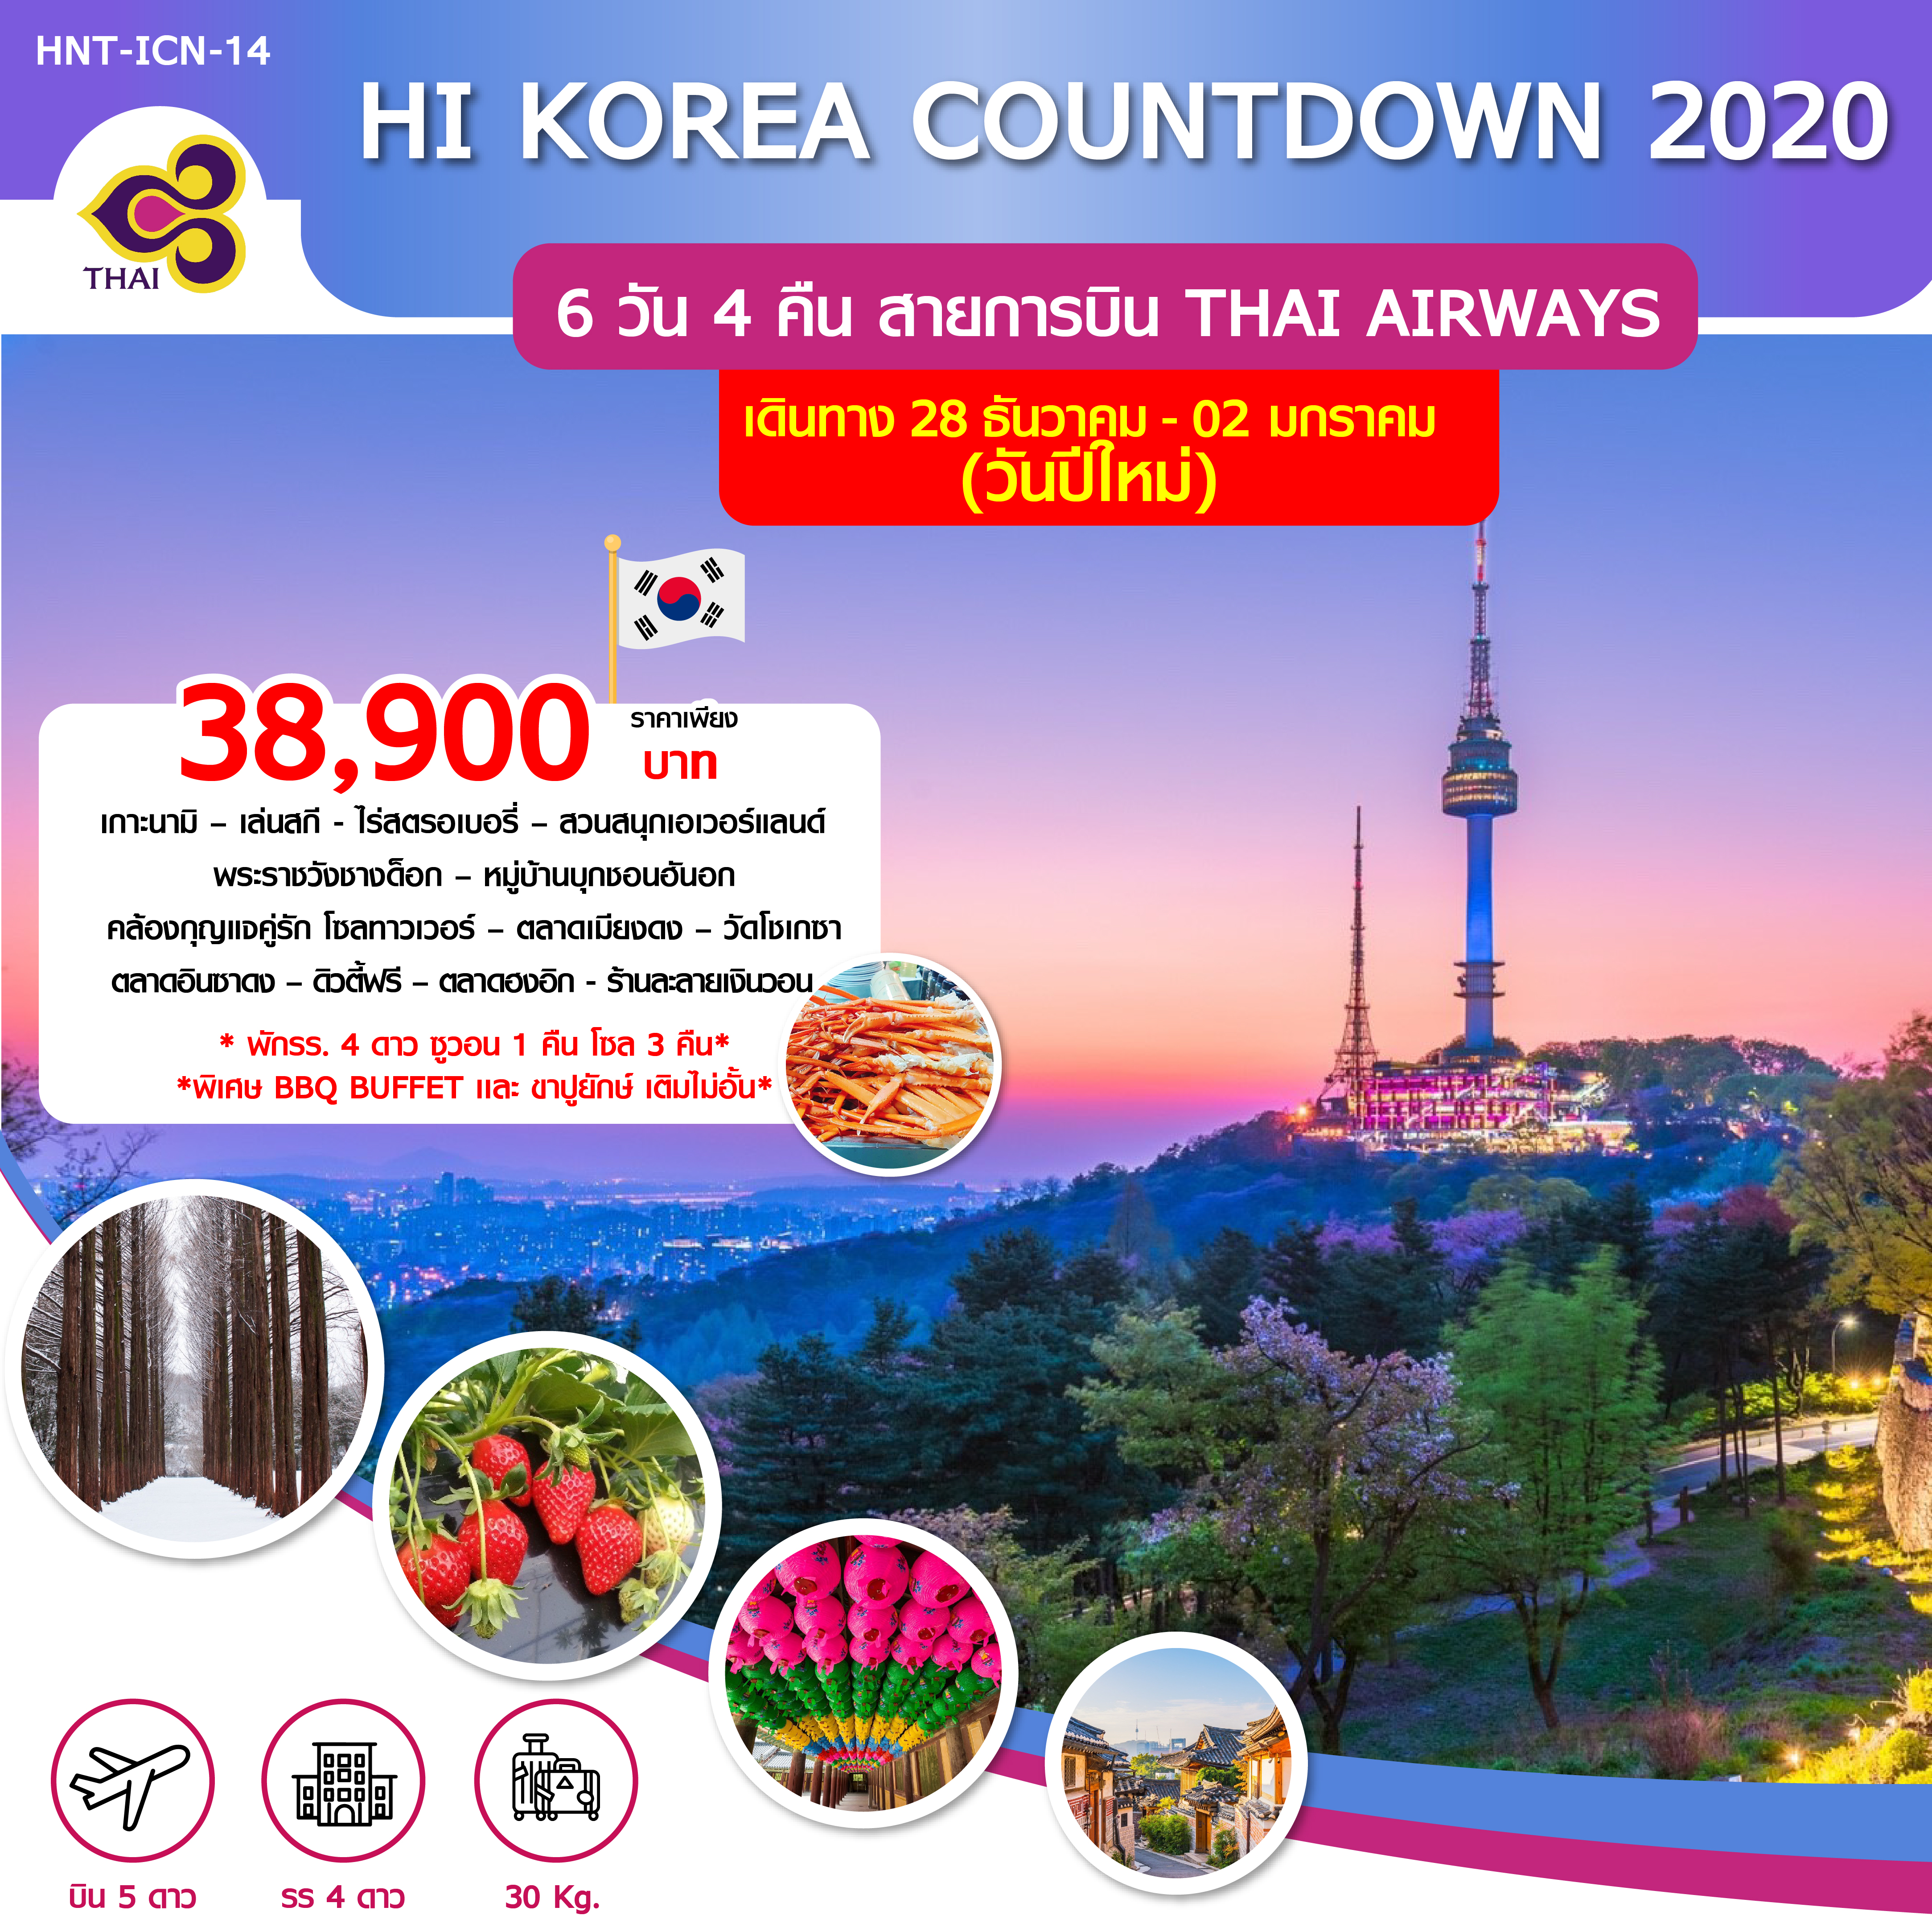  ปีใหม่ !! ทัวร์เกาหลี HI KOREA COUNTDOWN 2020 (28DEC19-2JAN20)HNT-ICN-14